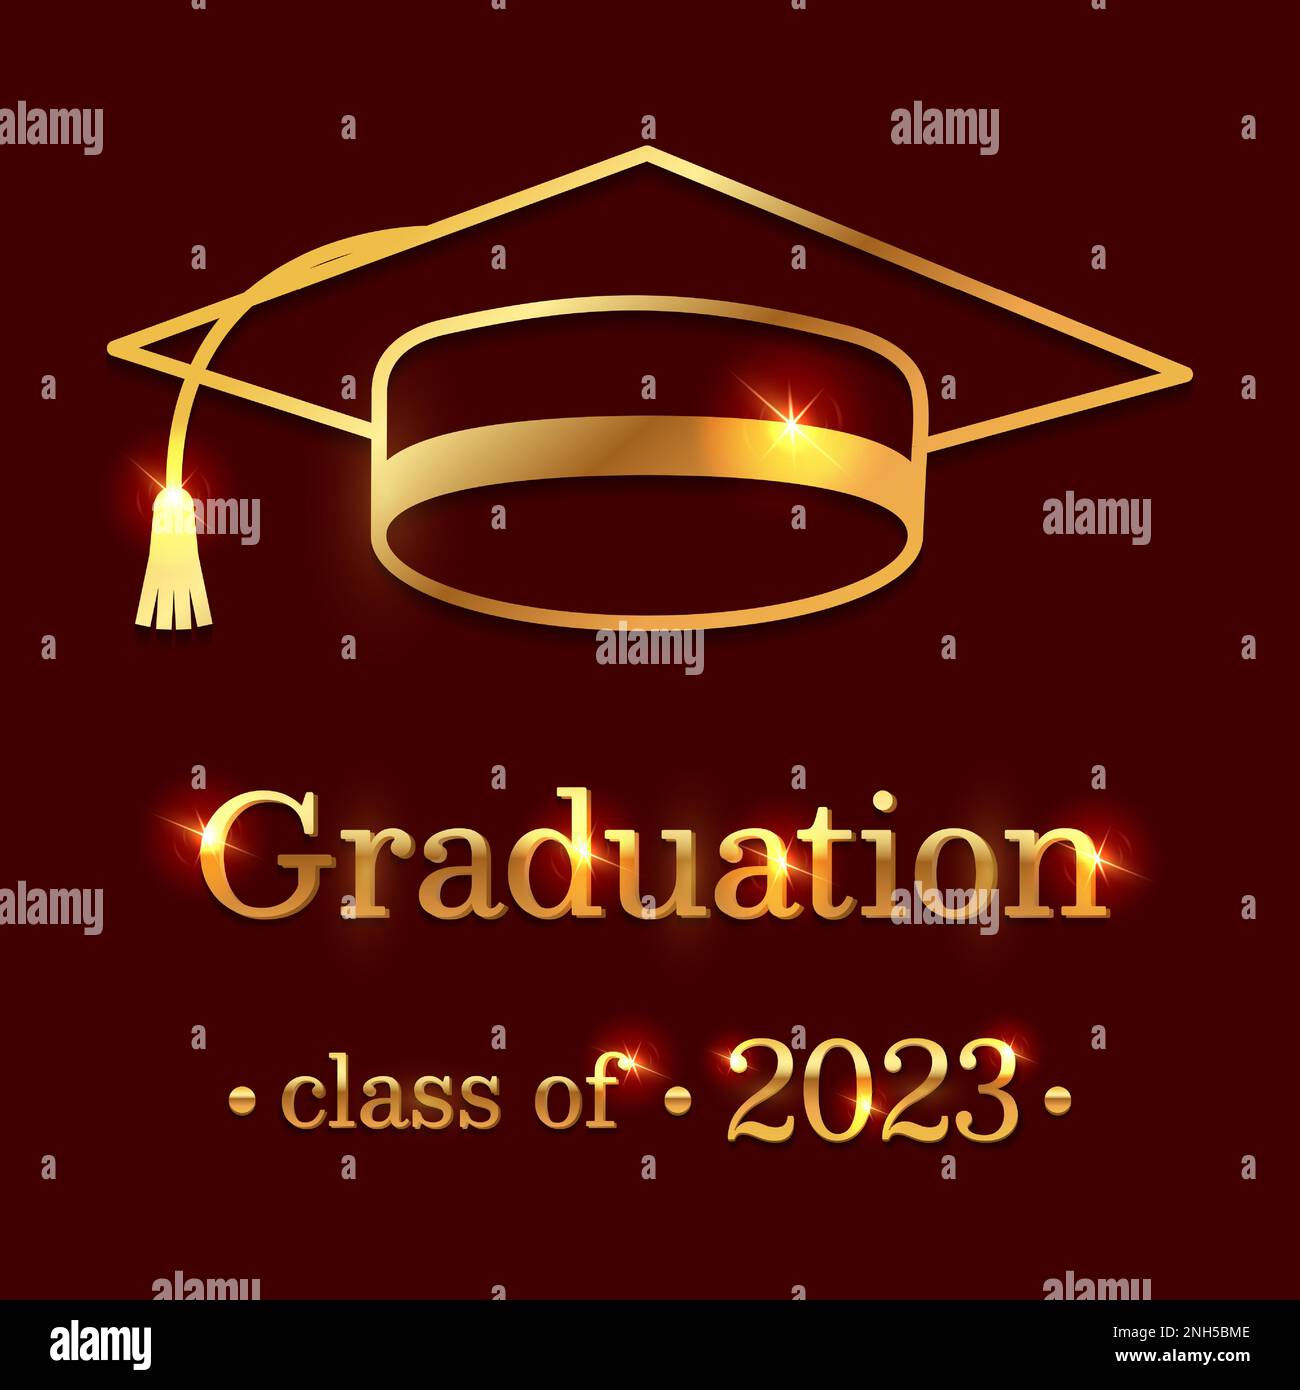 Sfondo graduato con elementi decorativi in oro e testo di congratulazioni su sfondo rosso scuro. Design elegante legato alla graduazione. Vettore il Illustrazione Vettoriale